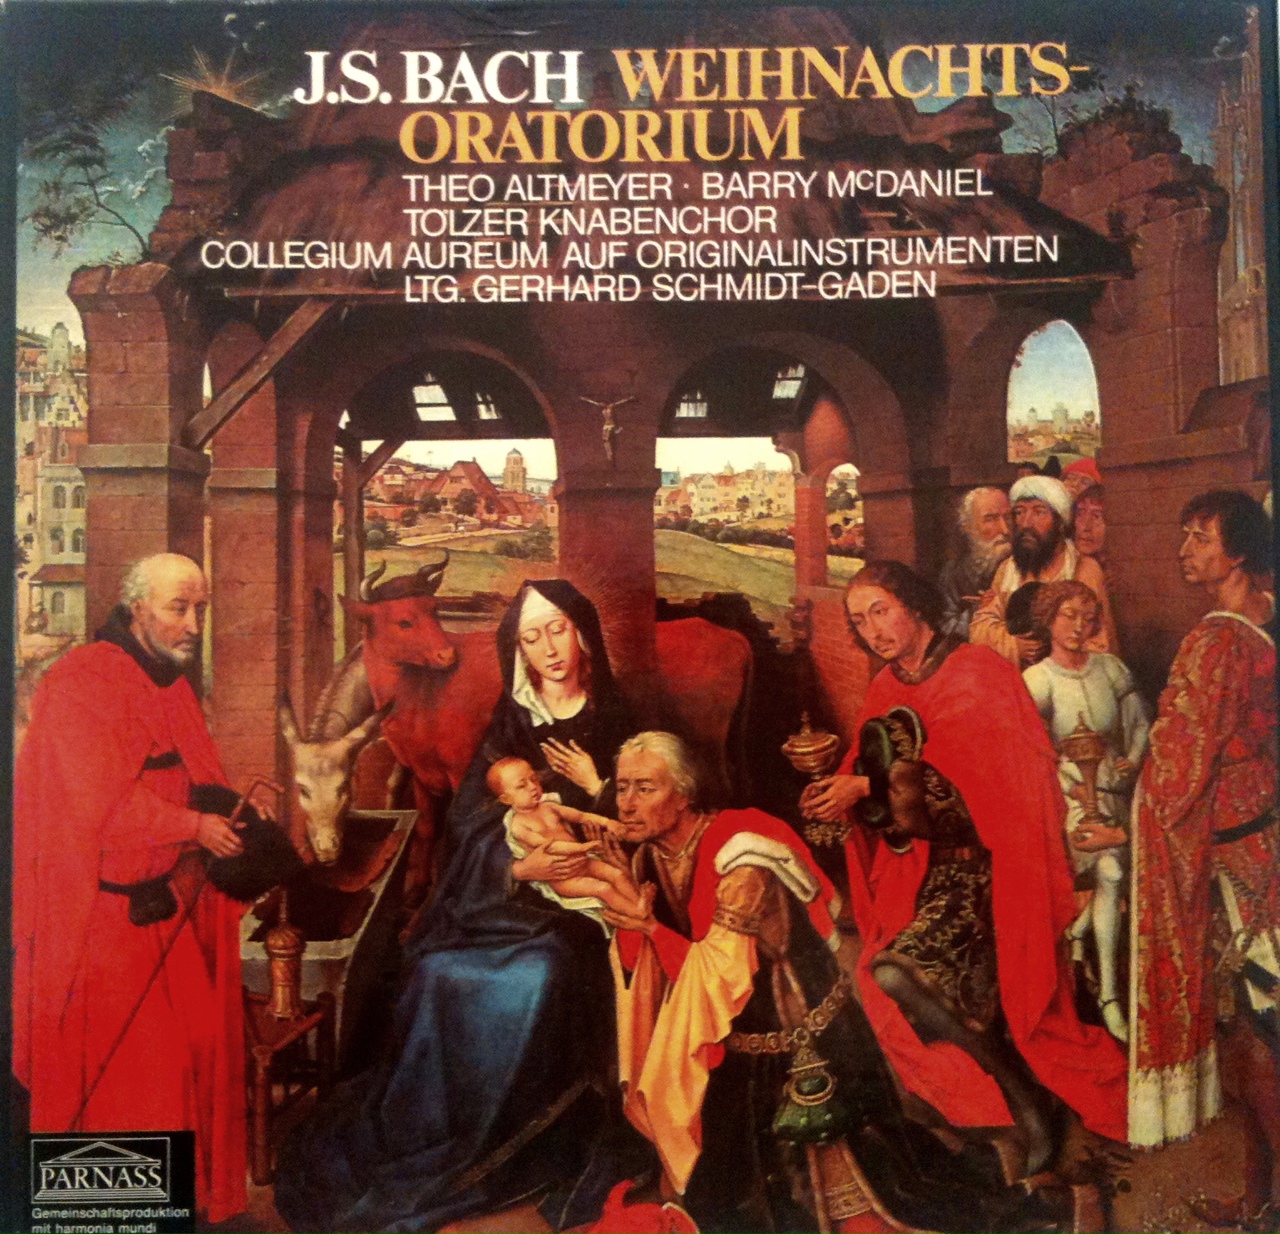 Deutscher Schallplattenpreis für Bachs Weihnachtsoratorium